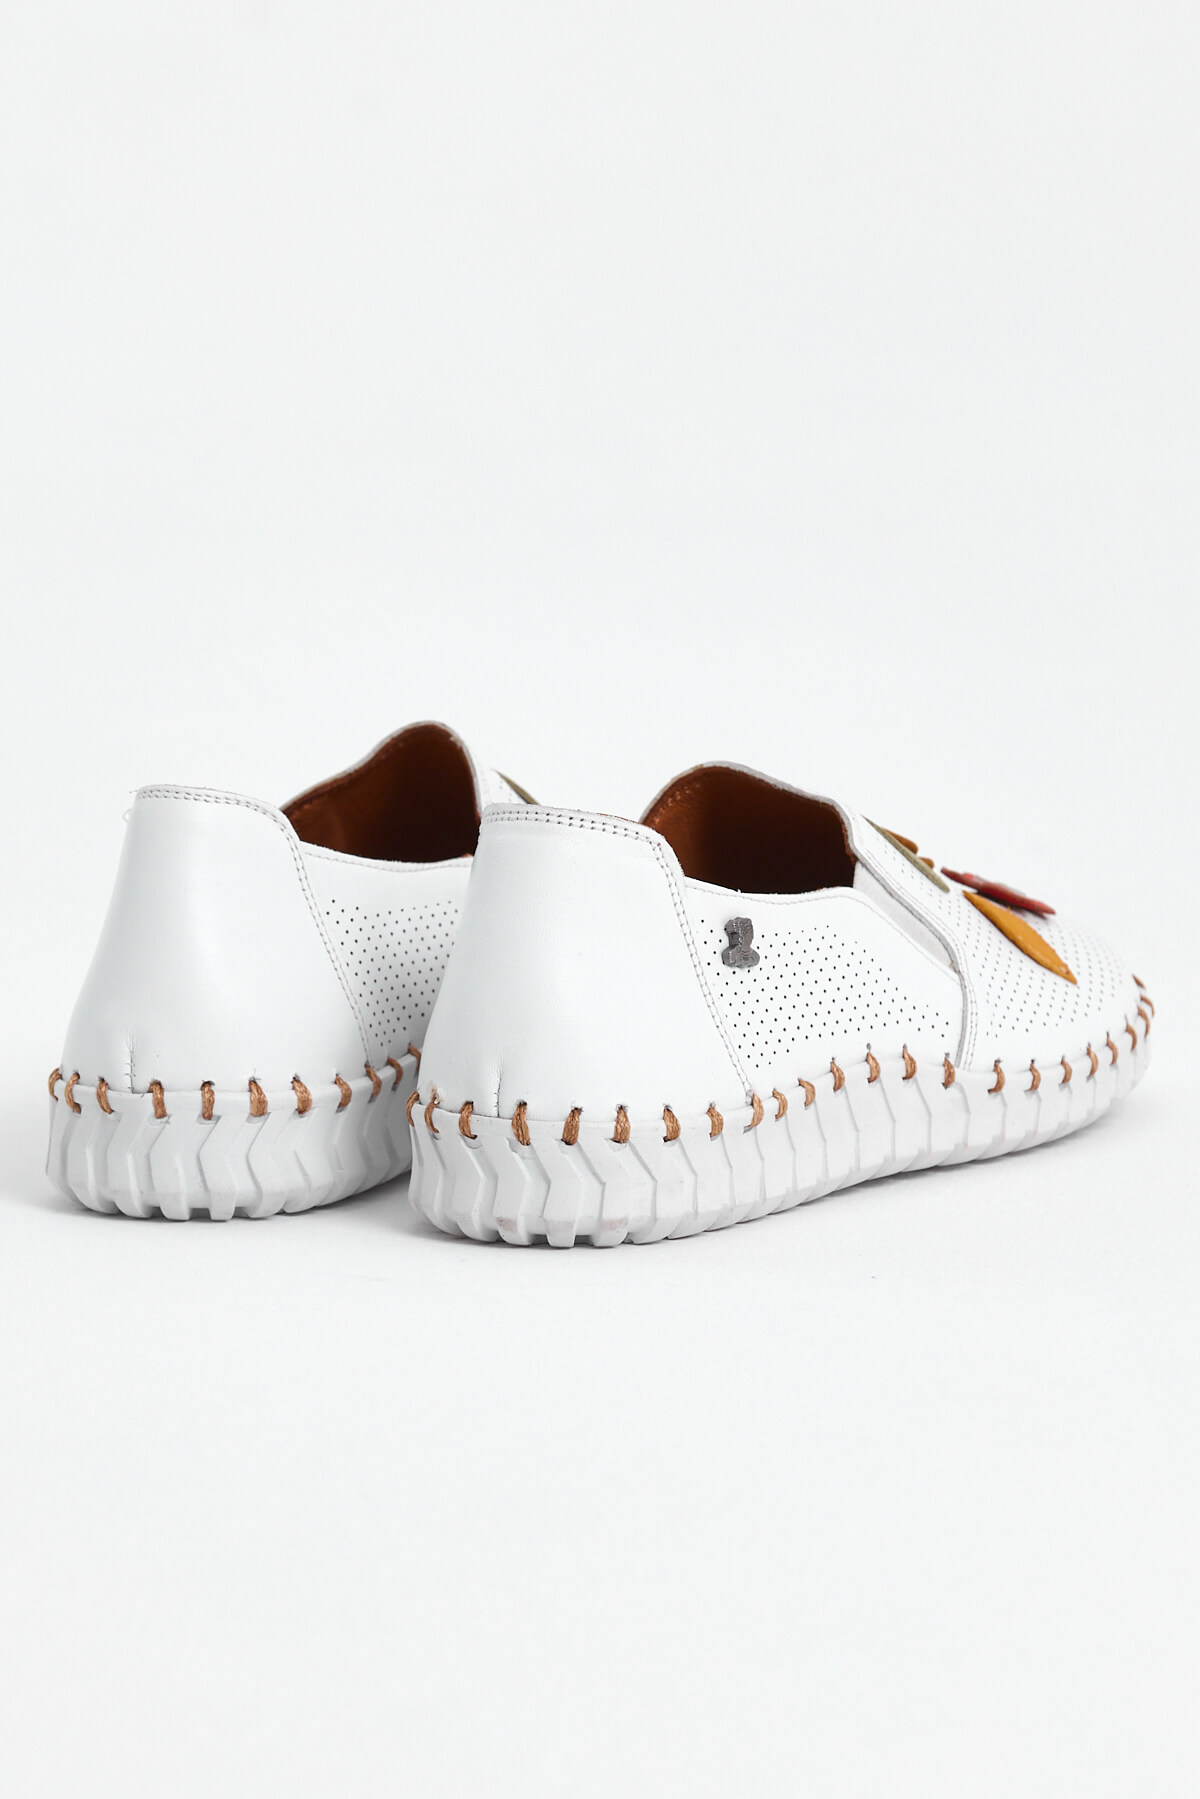 Kadın Comfort Deri Ayakkabı Beyaz 2010719Y